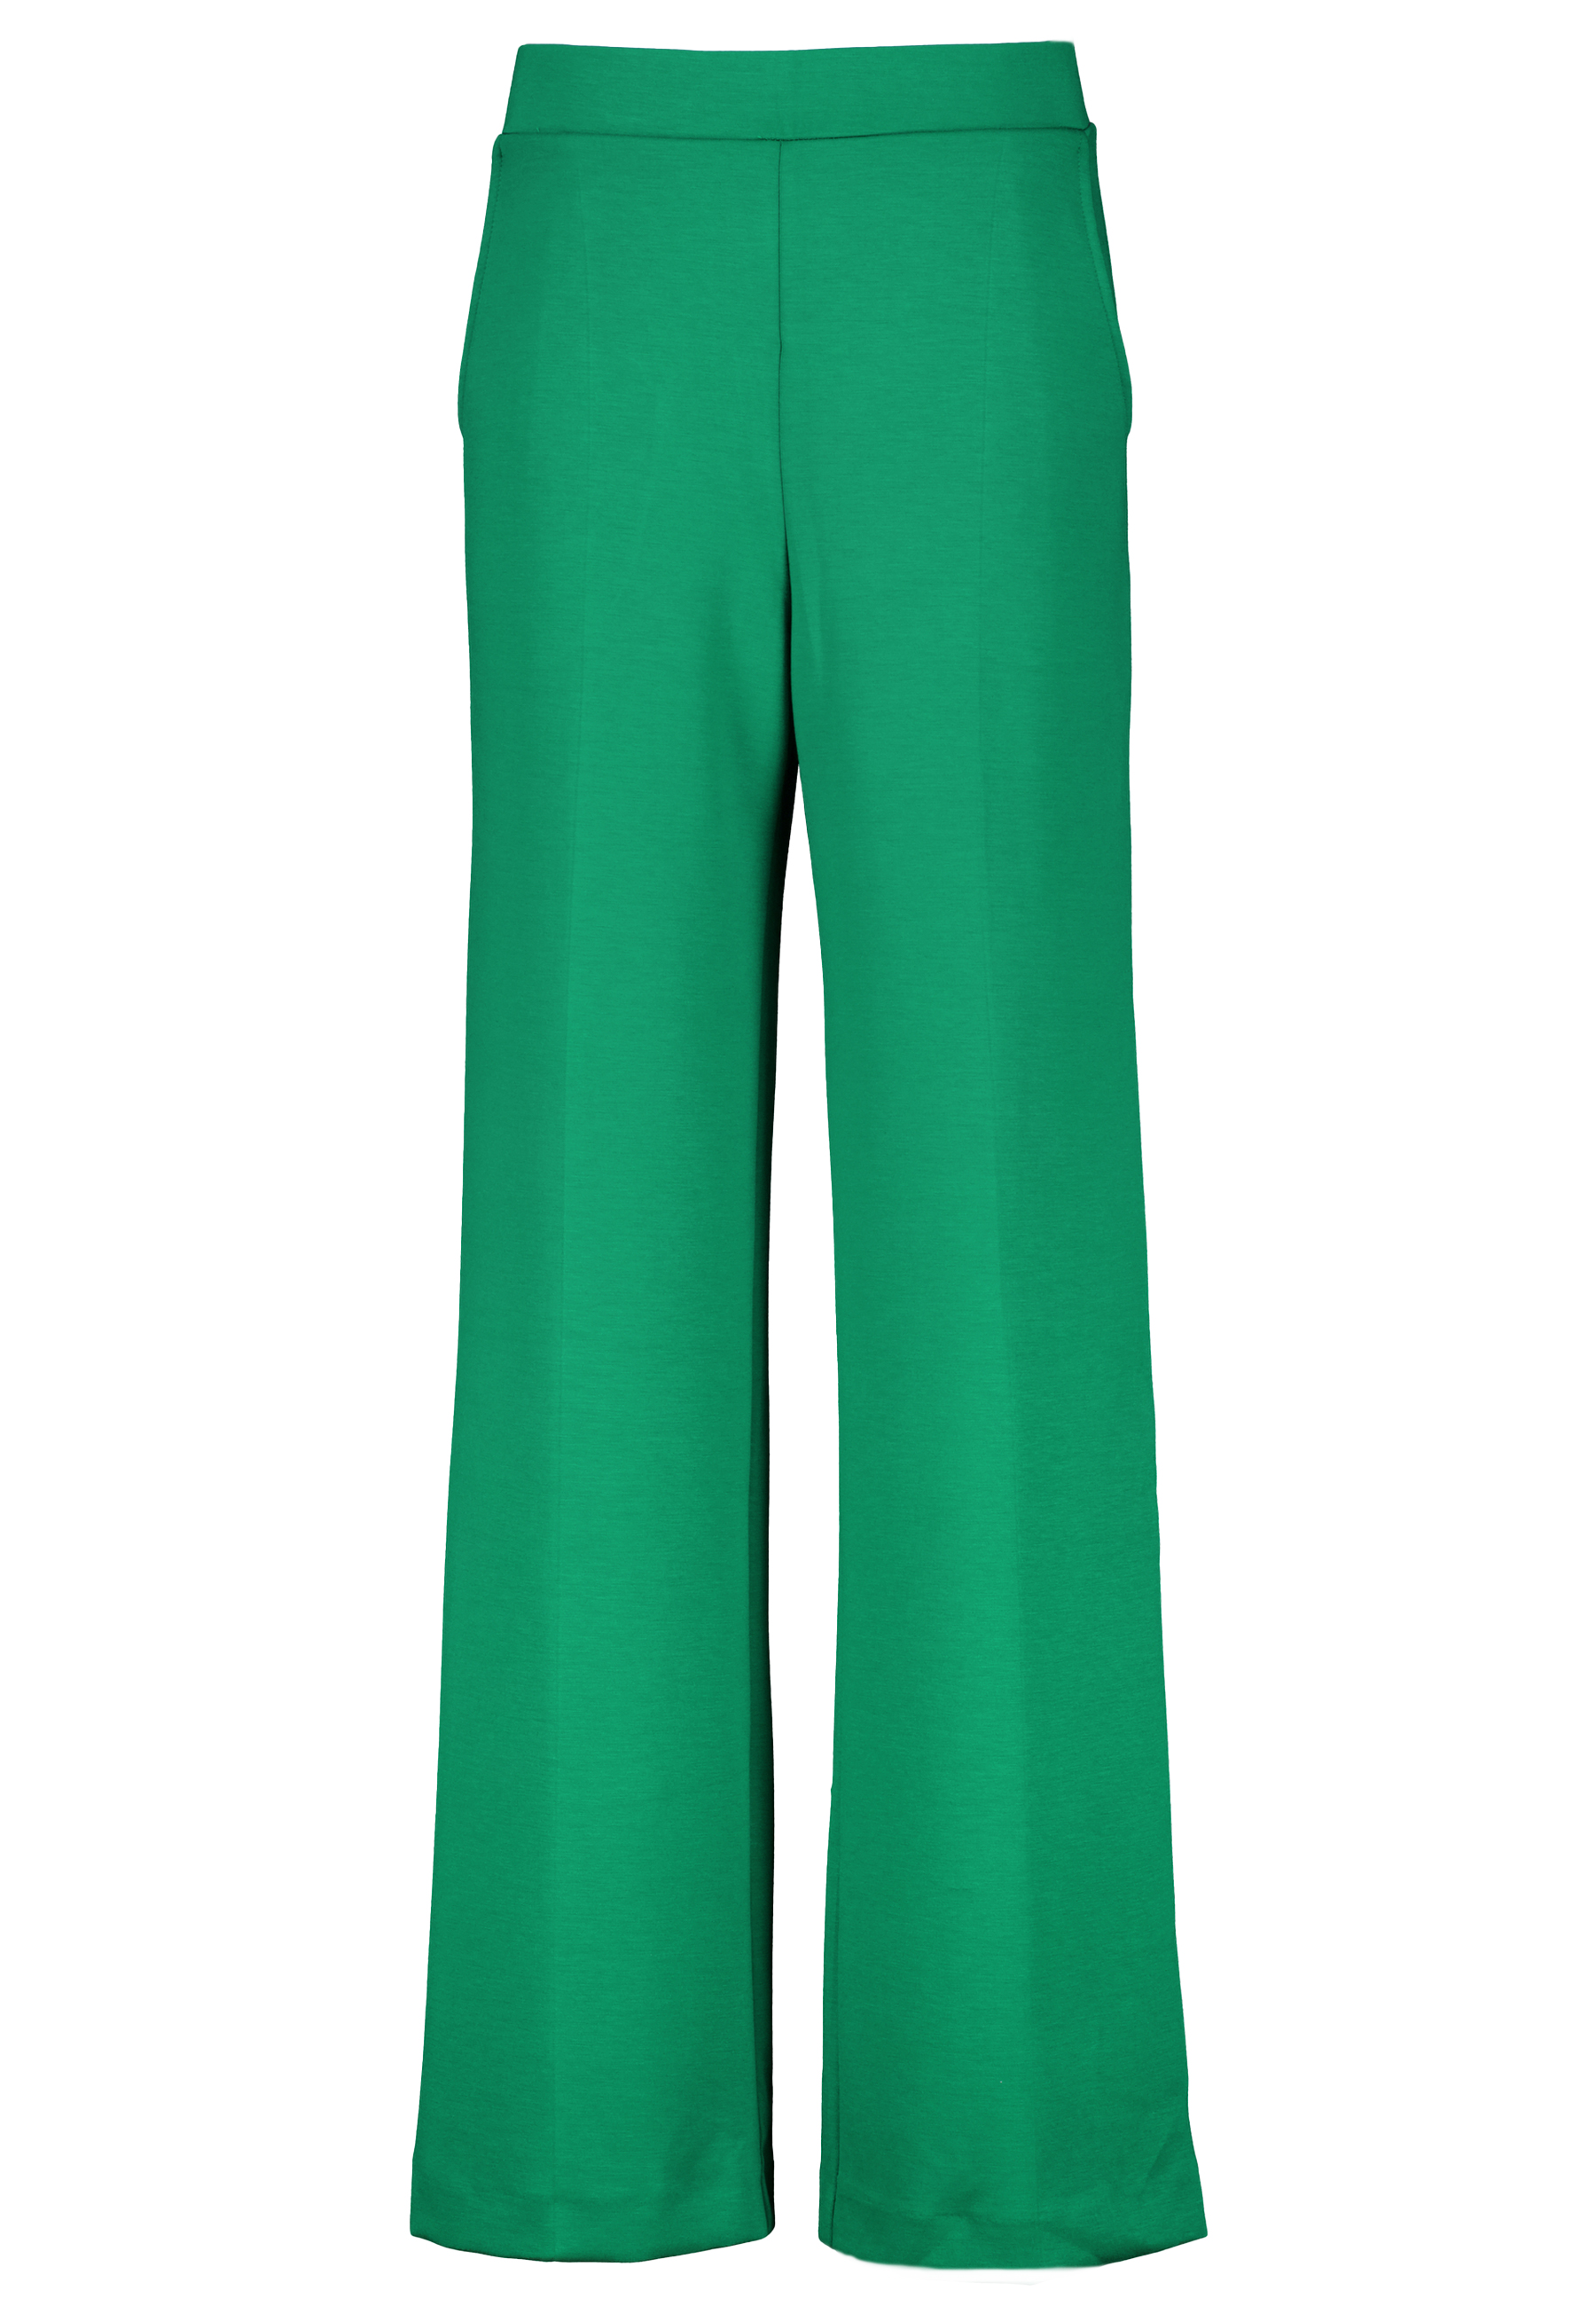 Ana Alcazar pantalons groen Dames maat 38